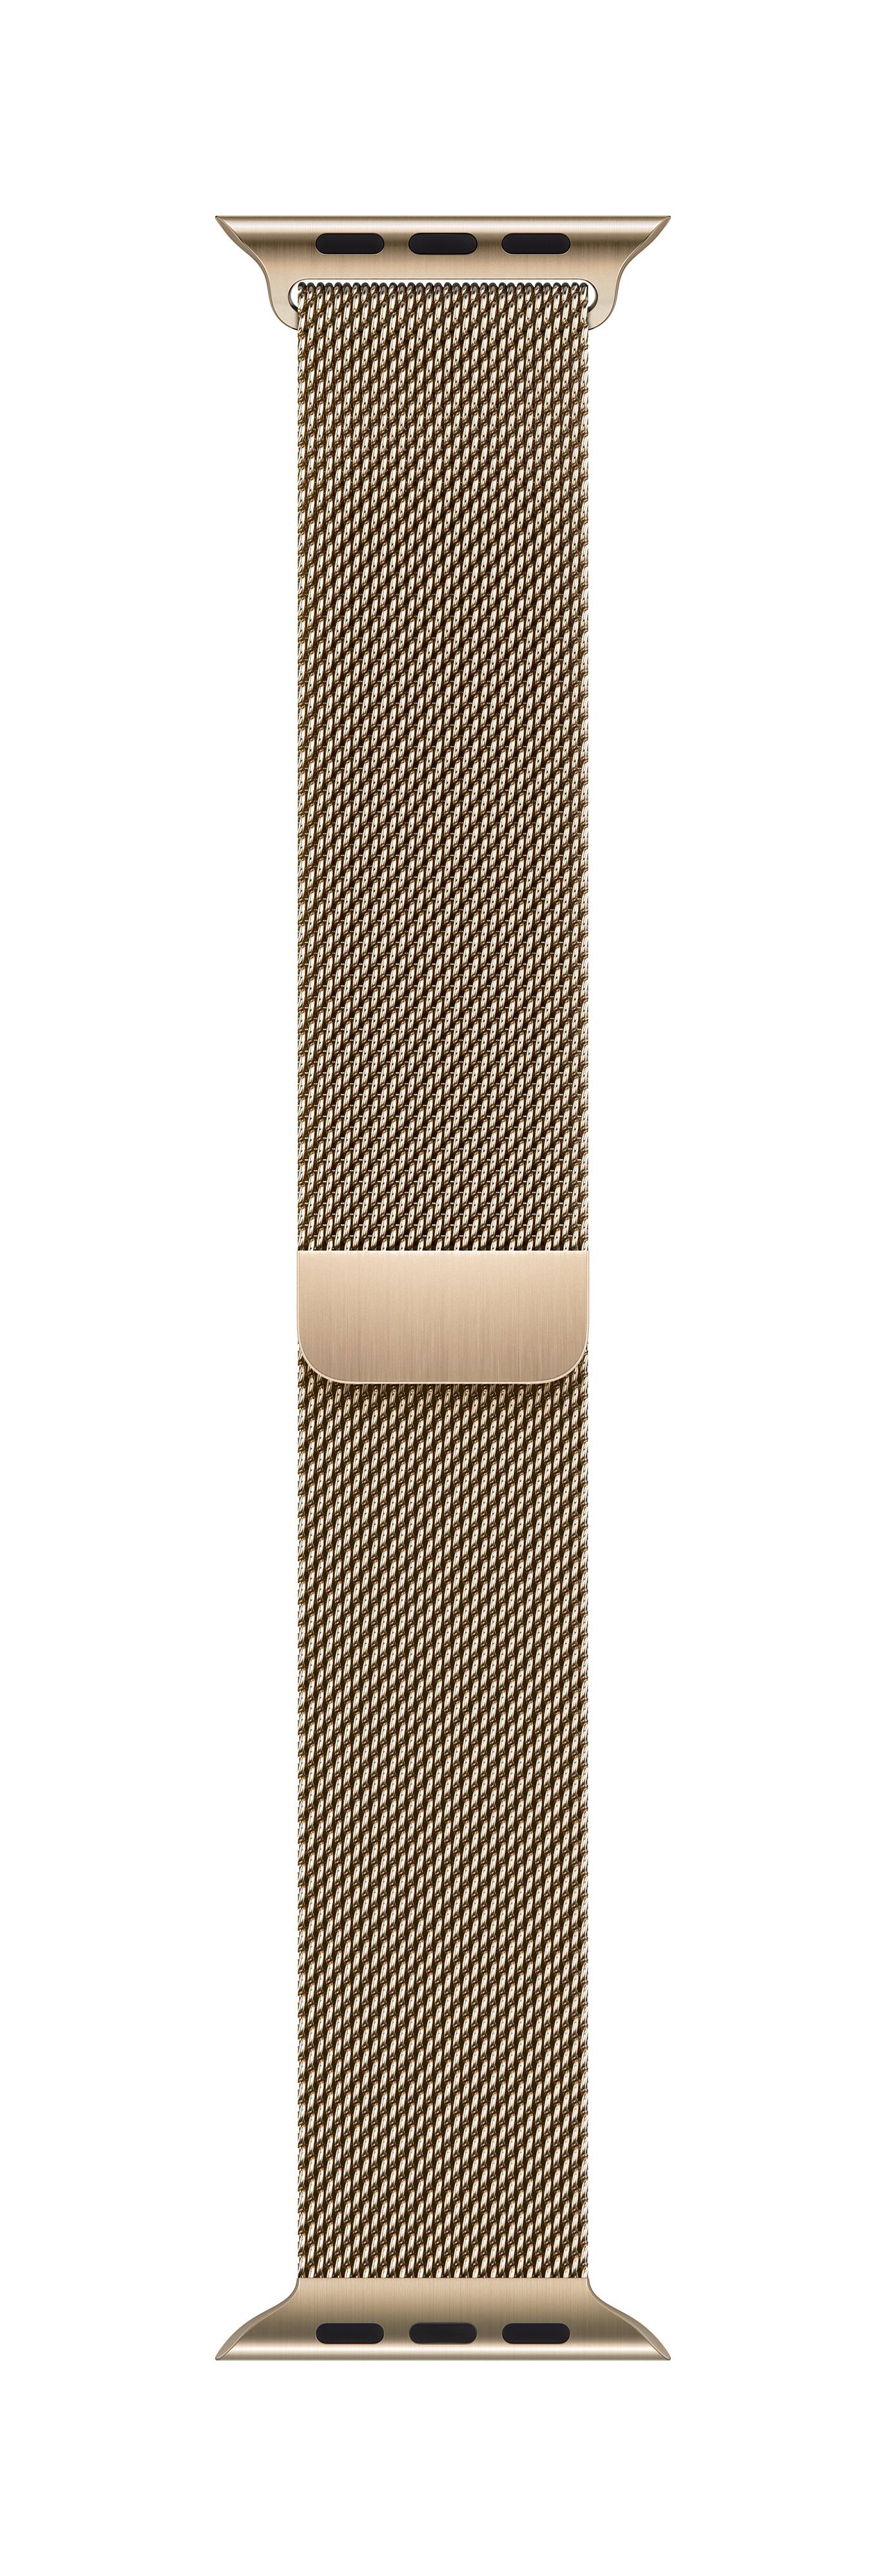 APPLE Milanaise Armband für Watch 45mm (gold)